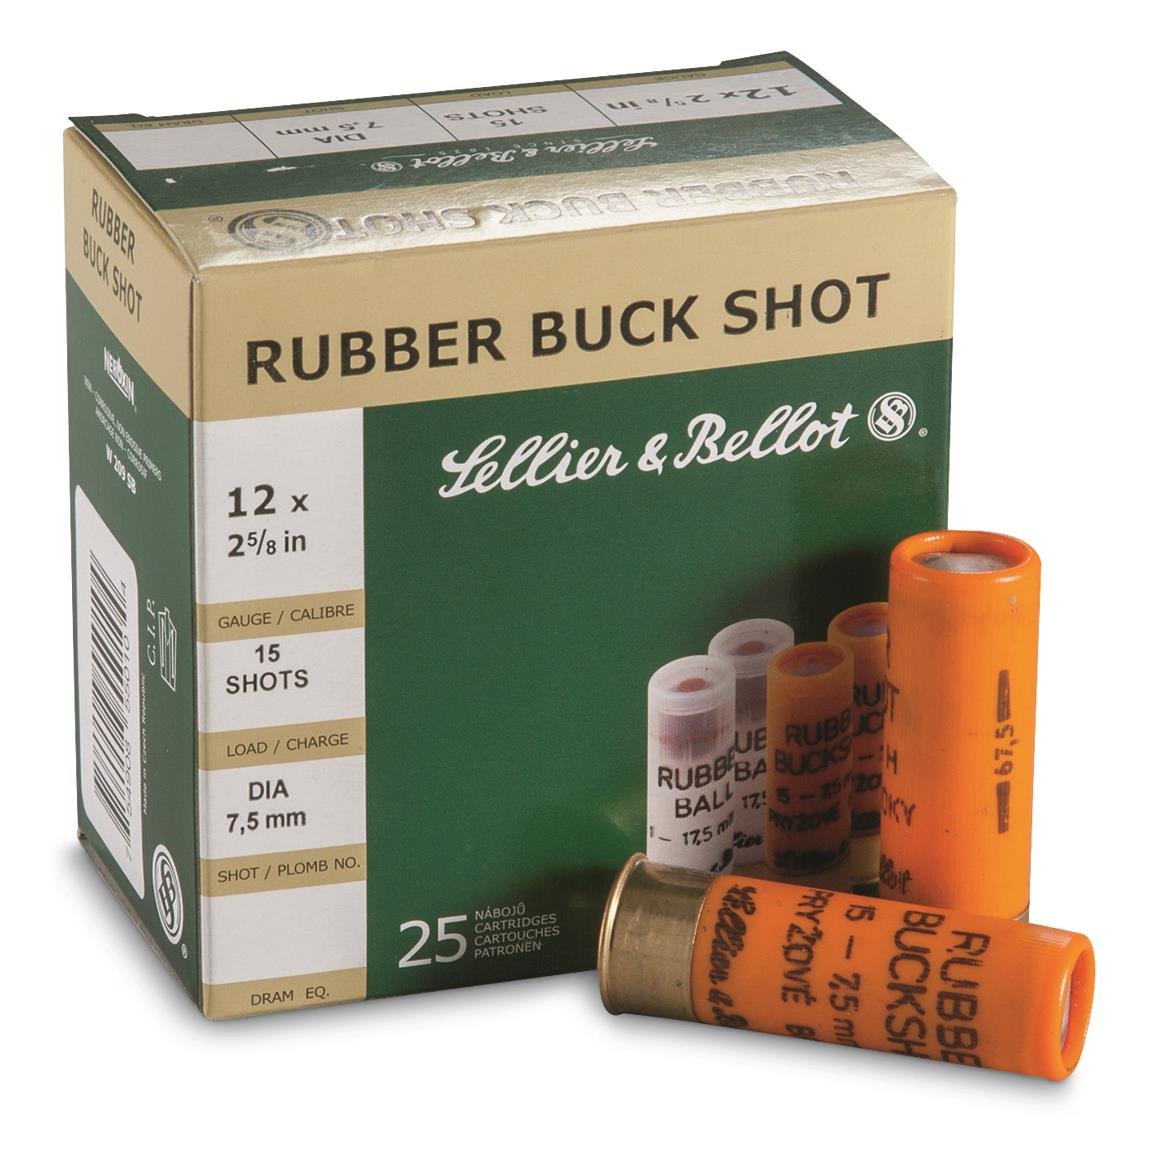 Sellier & Bellot,  2 5/8", 12 Gauge, Rubber Buckshot, 25 Rounds